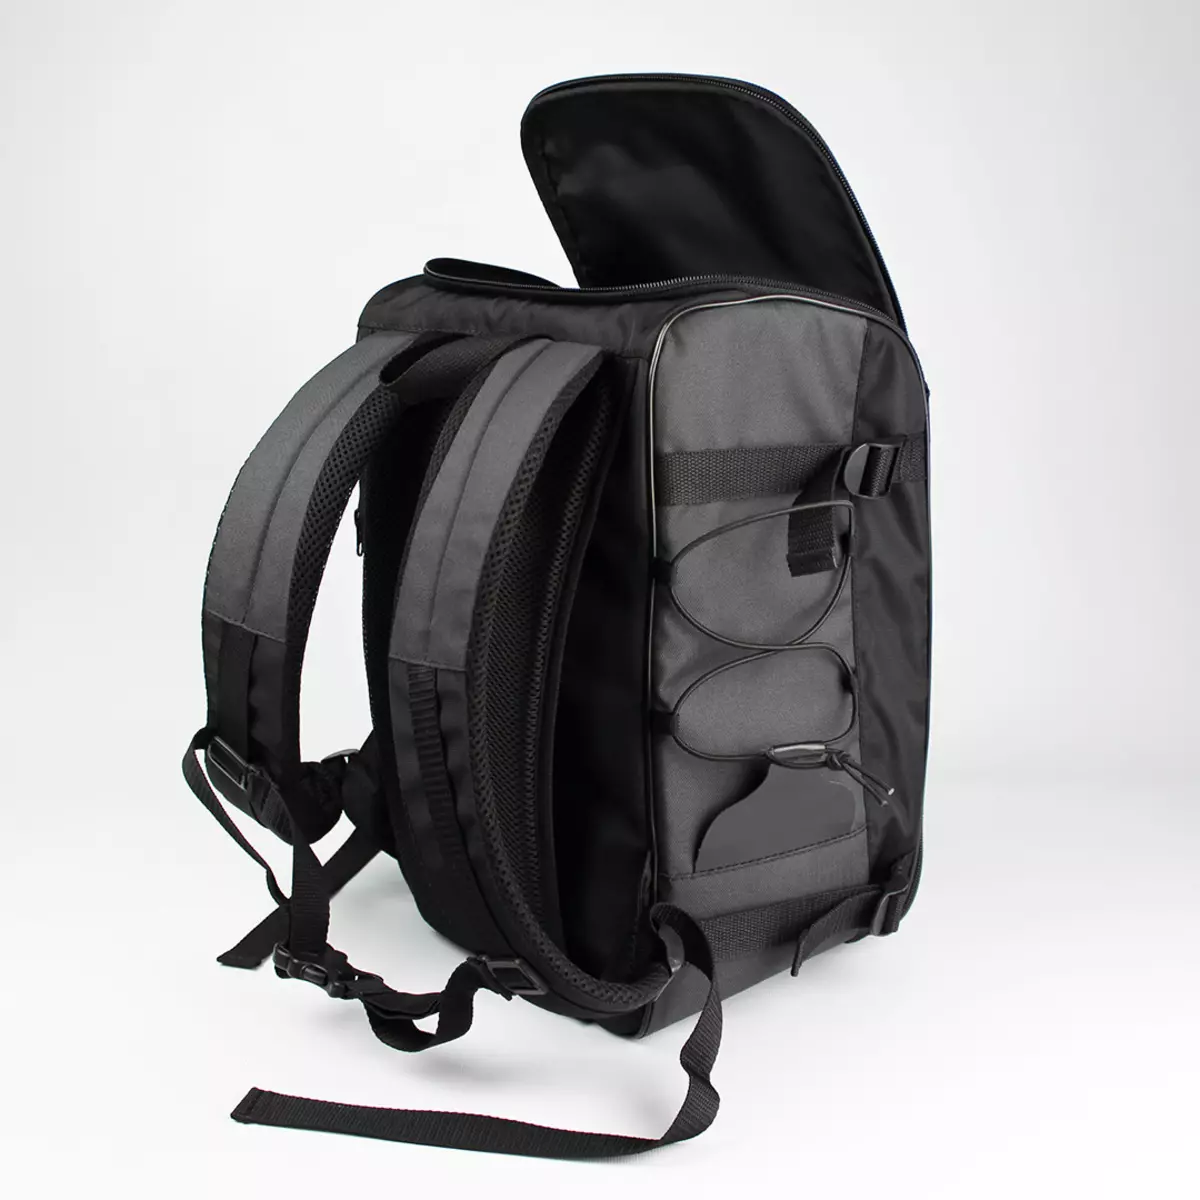 Handväska Ryggsäck: Betraktas det på en ryggsäck för att resa manuell slinga i planet? Mått. Vad kan födas och vad du ska vidarebefordra in i bagaget? 15346_18